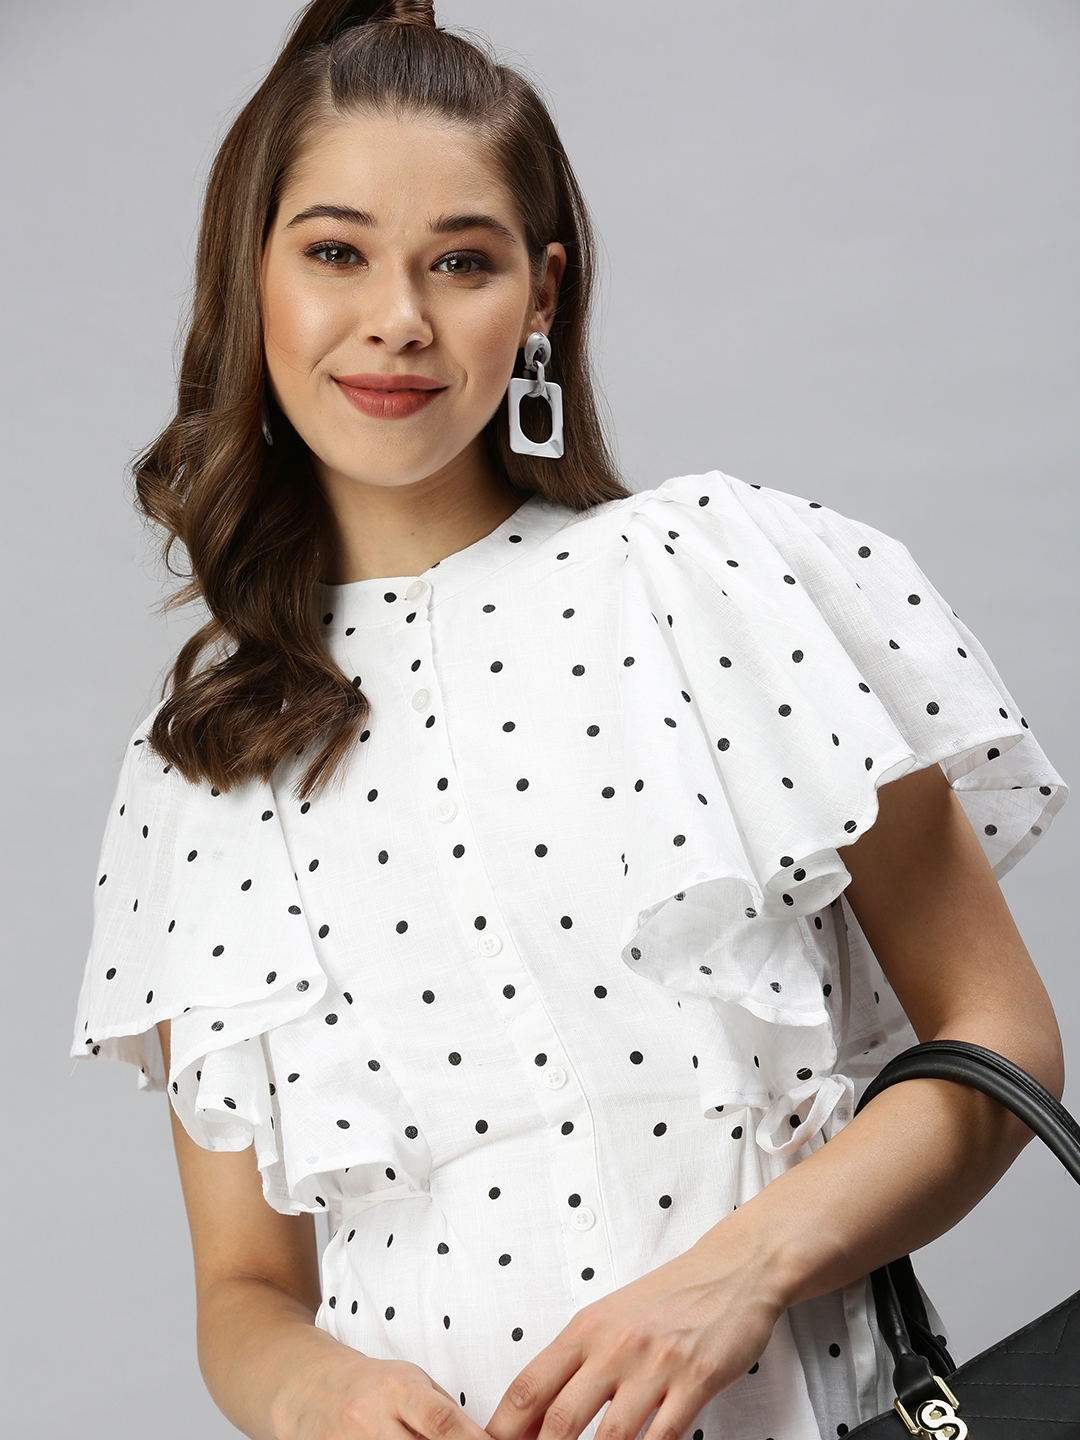 SHOWOFF Women's Polka Dots White Shirt Dress